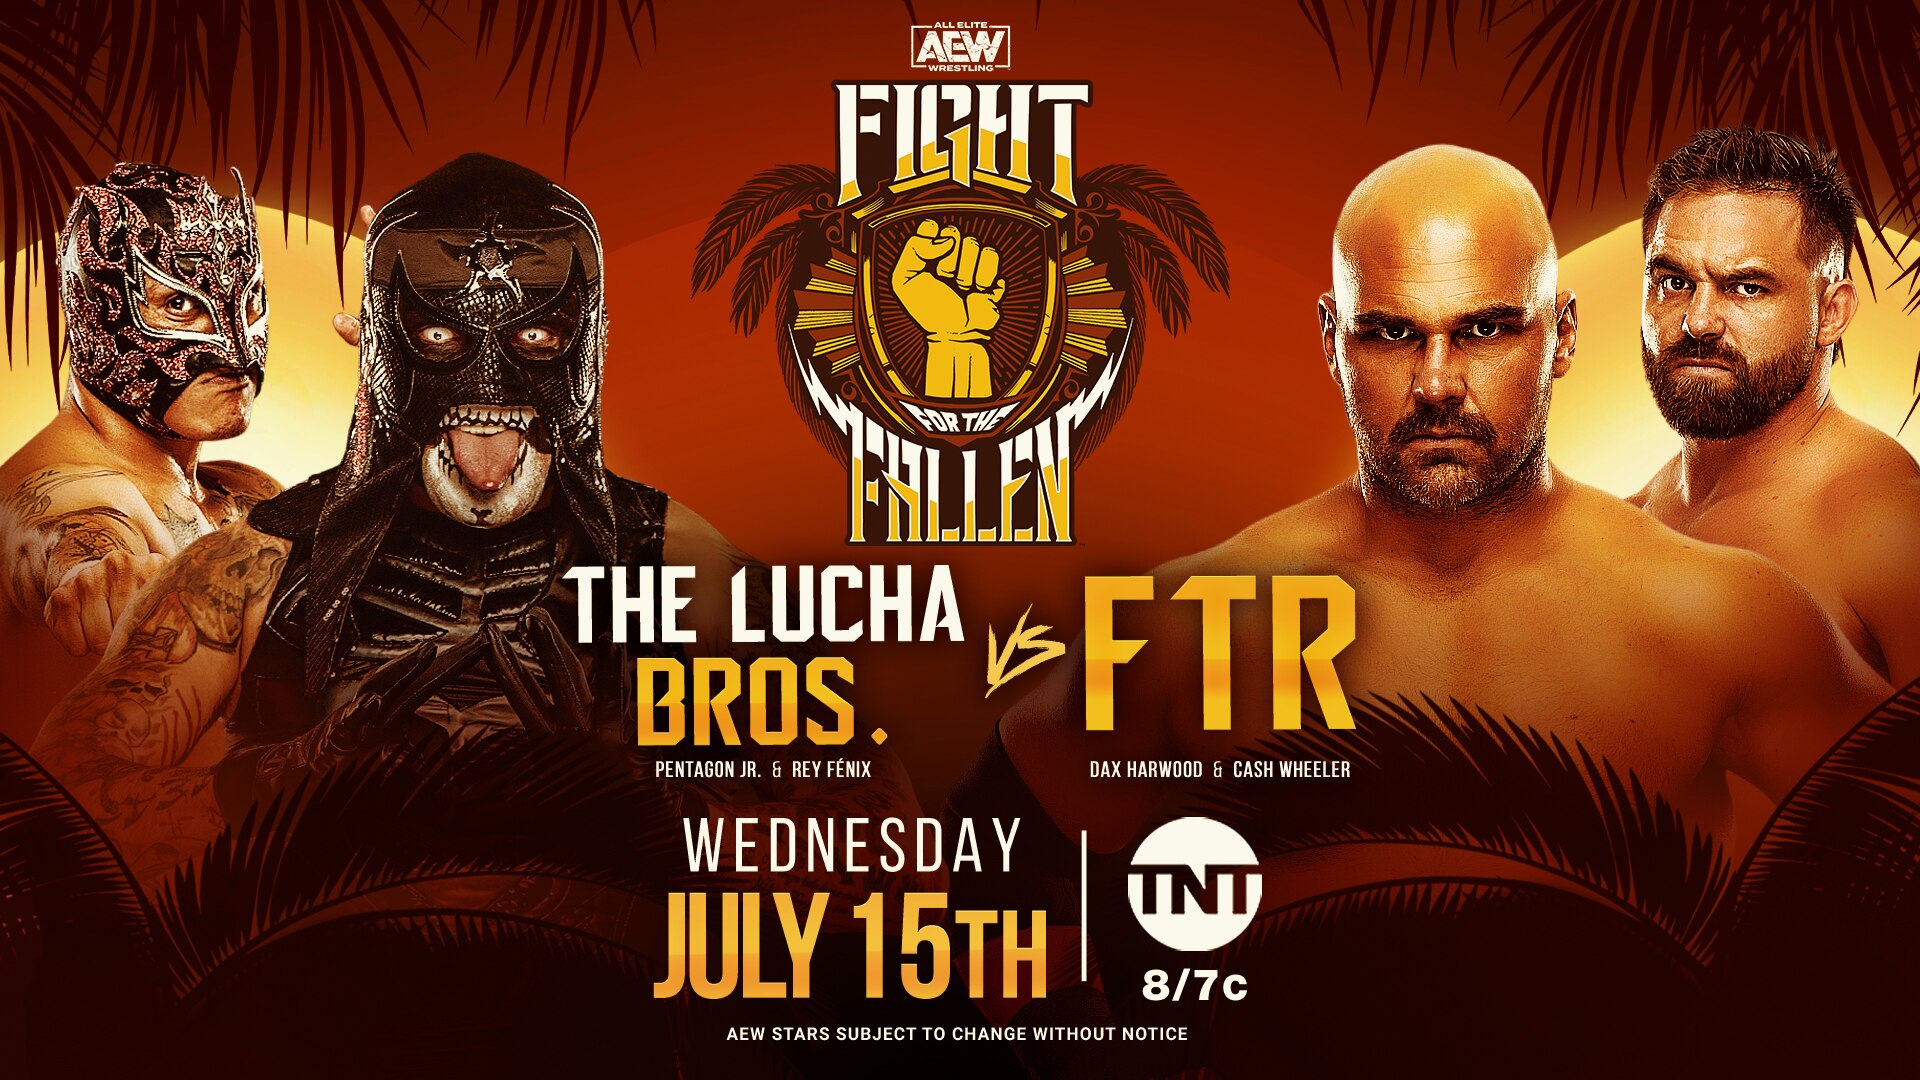 FTR vs Lucha Bros